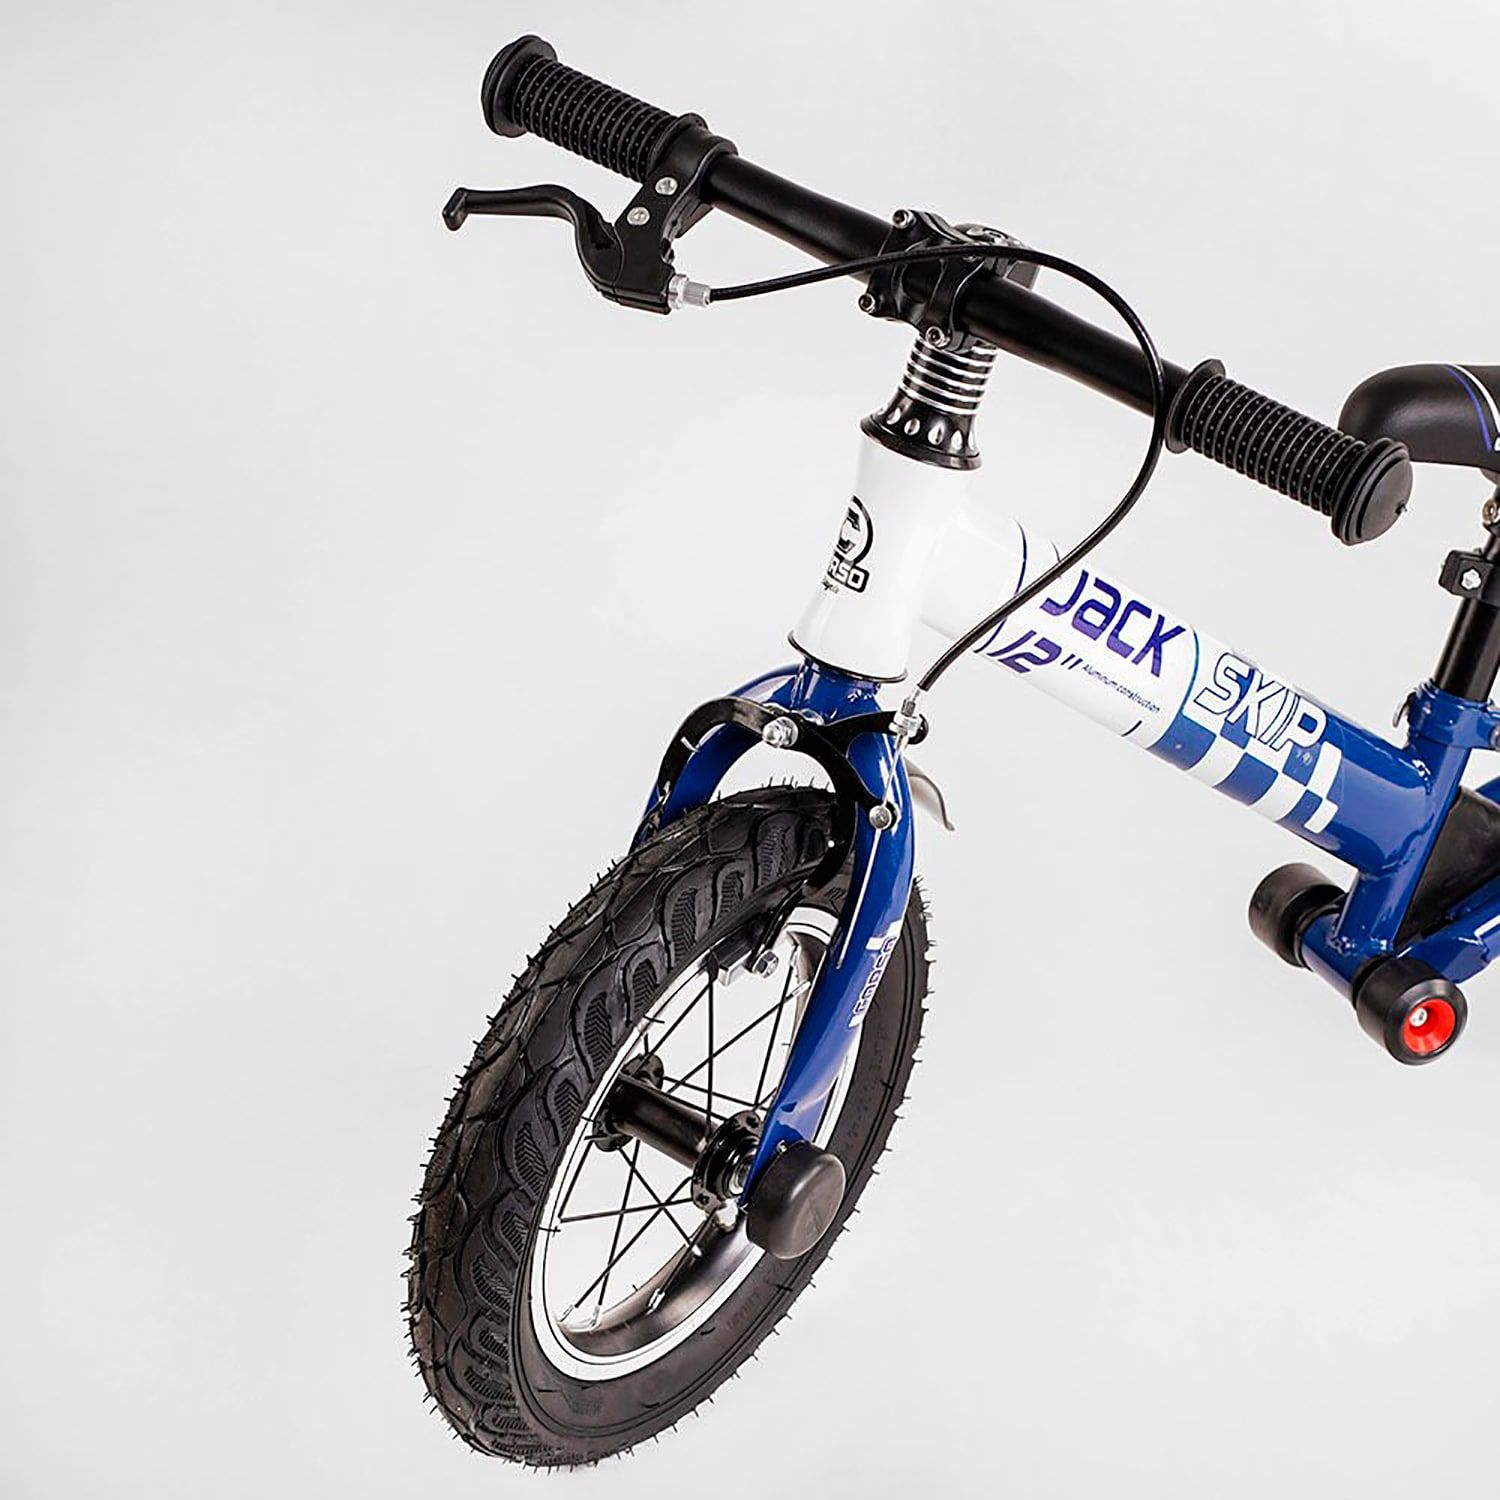 Велобіг Corso "Skip Jack" 93307 СИНЕ-БІЛИЙ, надувні колеса 12", сталева рама з амортизатором, ручне гальмо, підніжка, в коробці